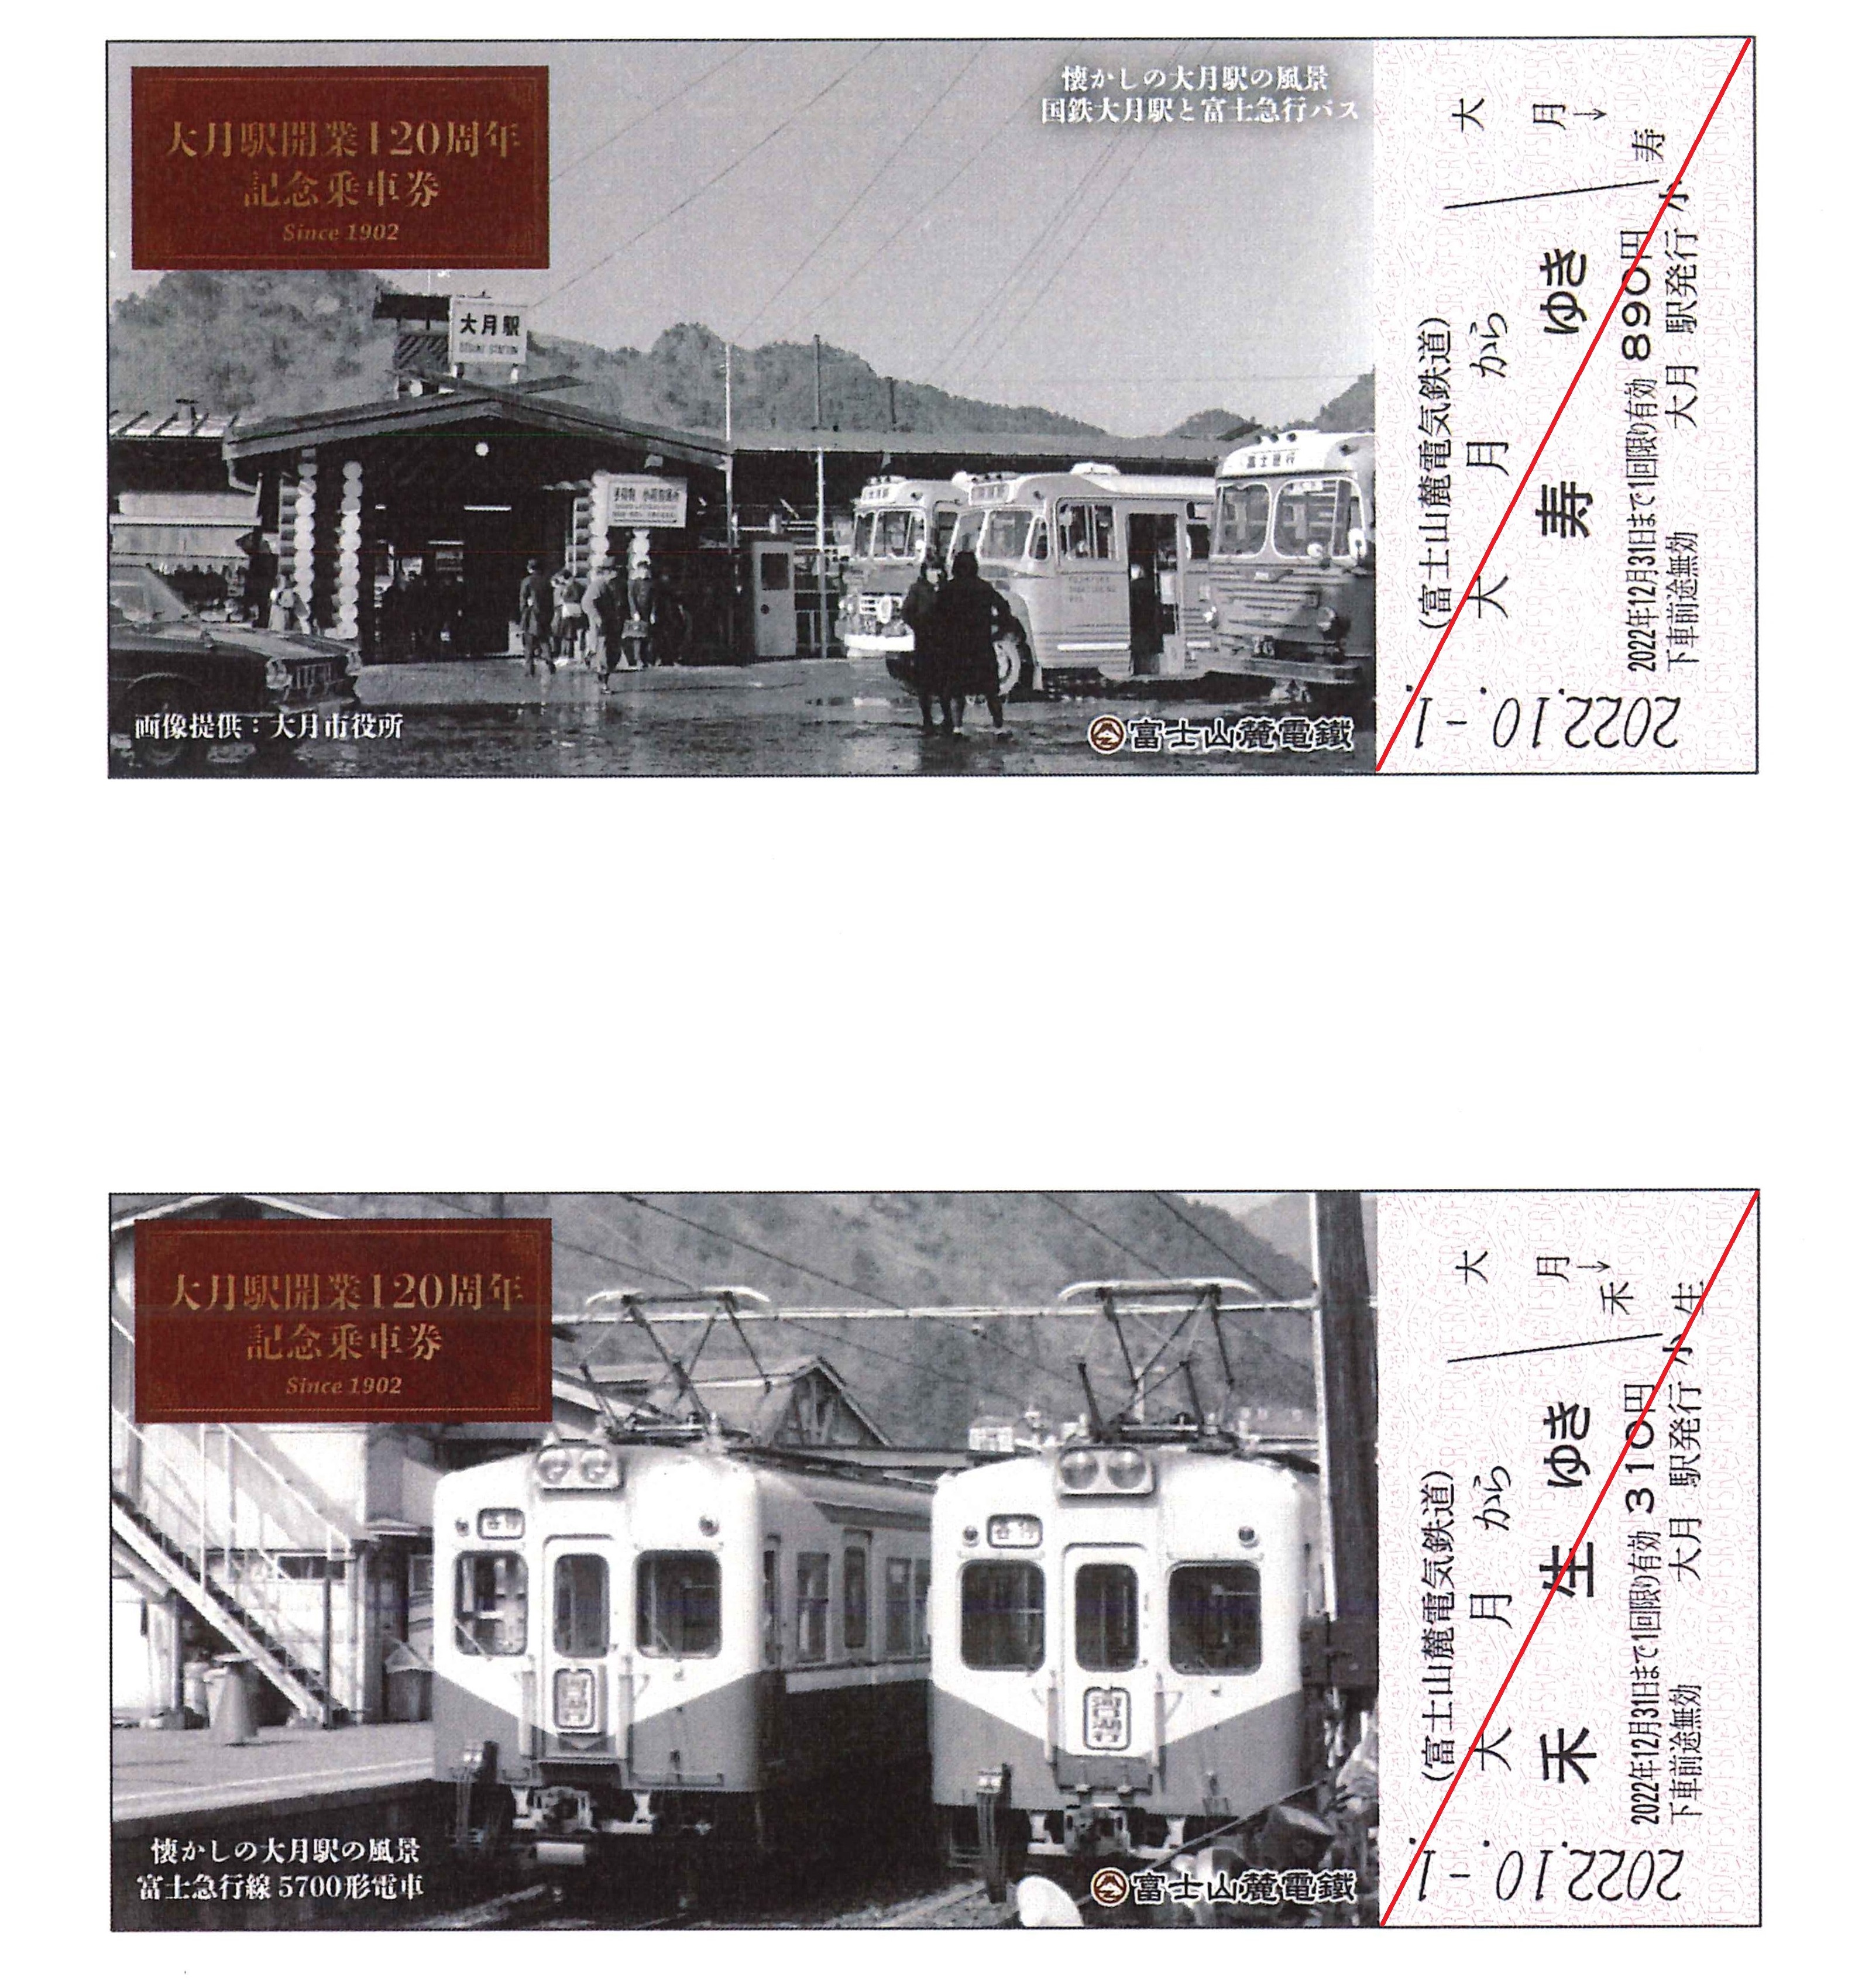 【グッズ】大月駅開業120周年記念乗車券の発売